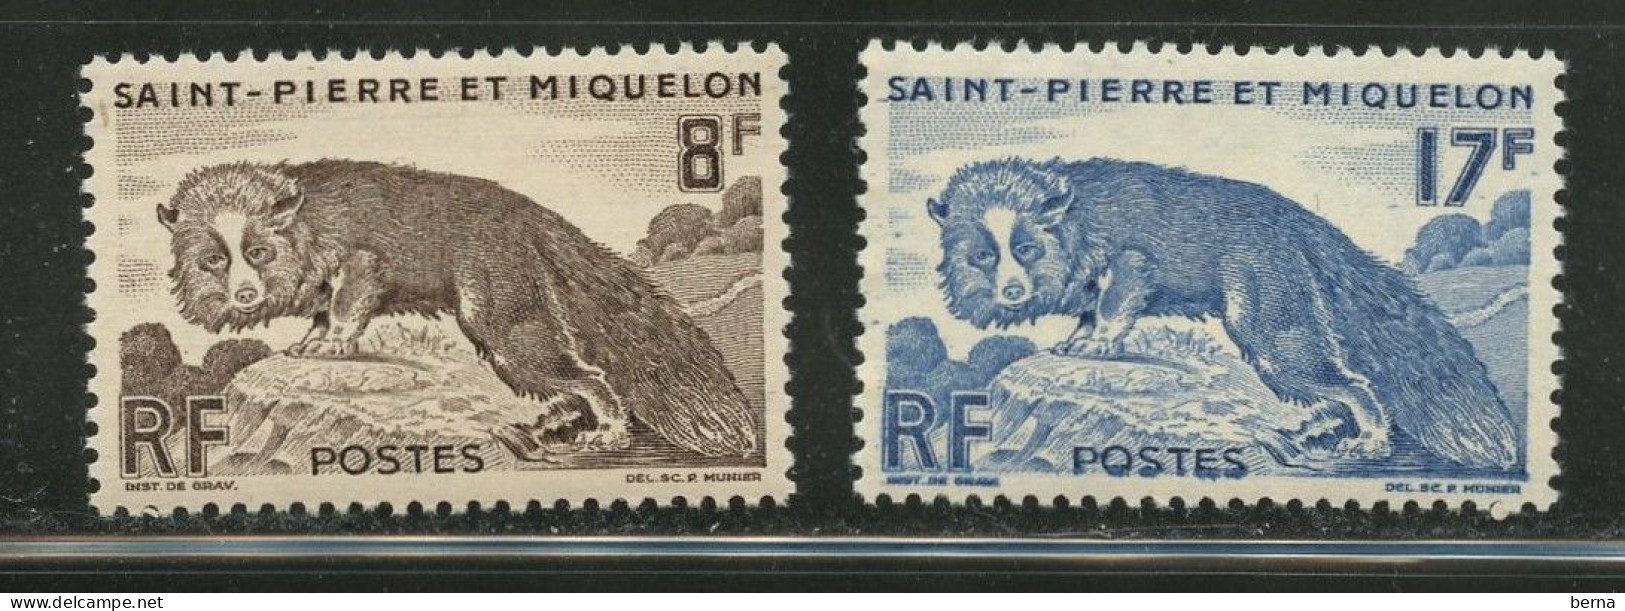 SAINT PIERRE ET MIQUELON PETAIN 345/346 RENARD LUXE NEUF SANS CHARNIERE - Unused Stamps